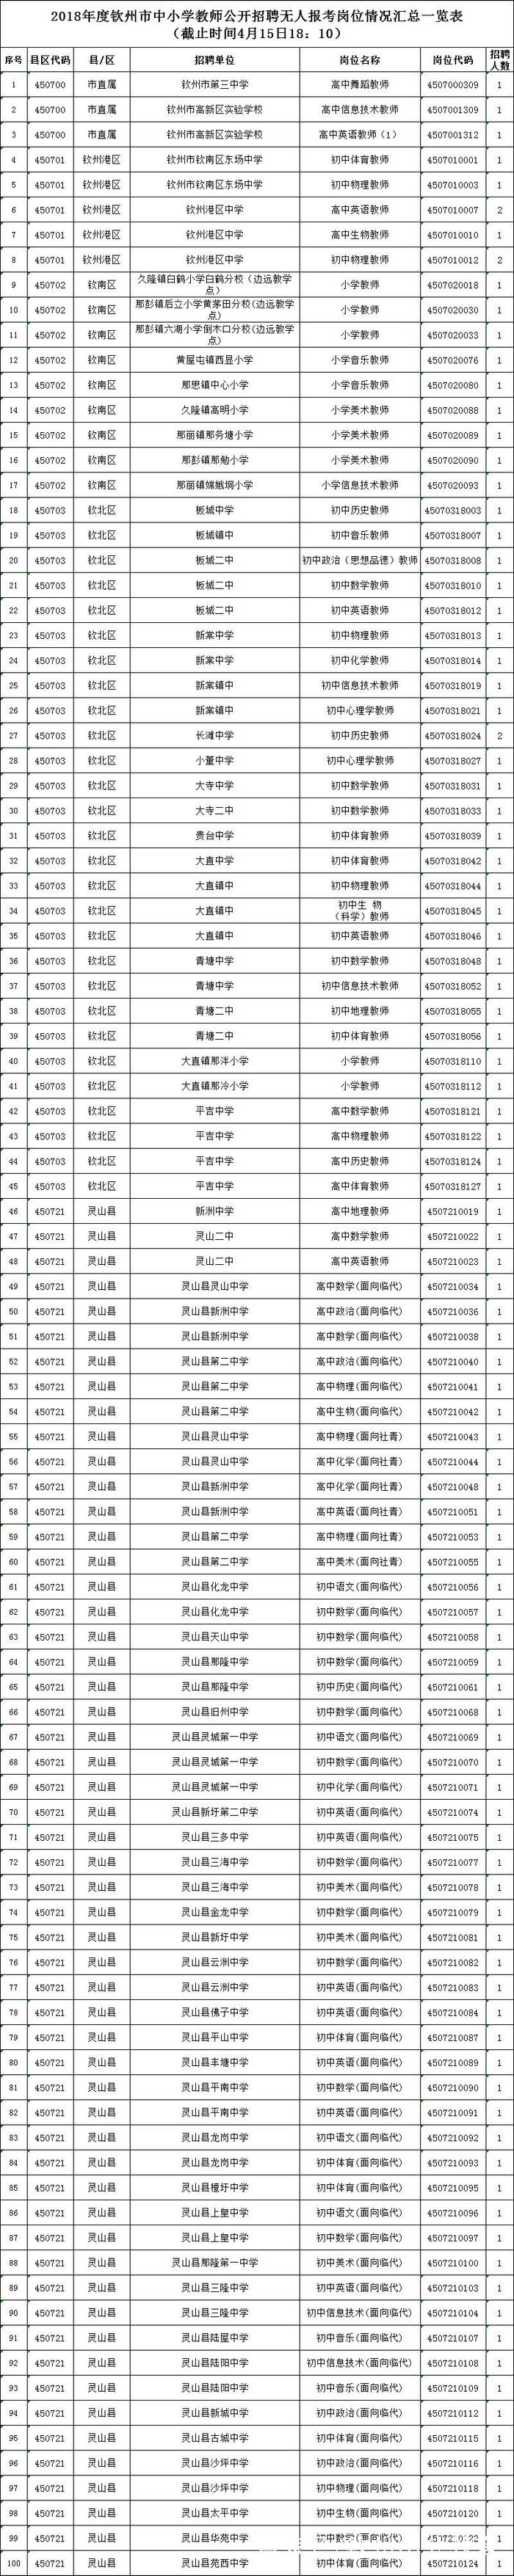 2018广西教师招聘报名今日结束, 截止昨天钦州191个岗位无人报考